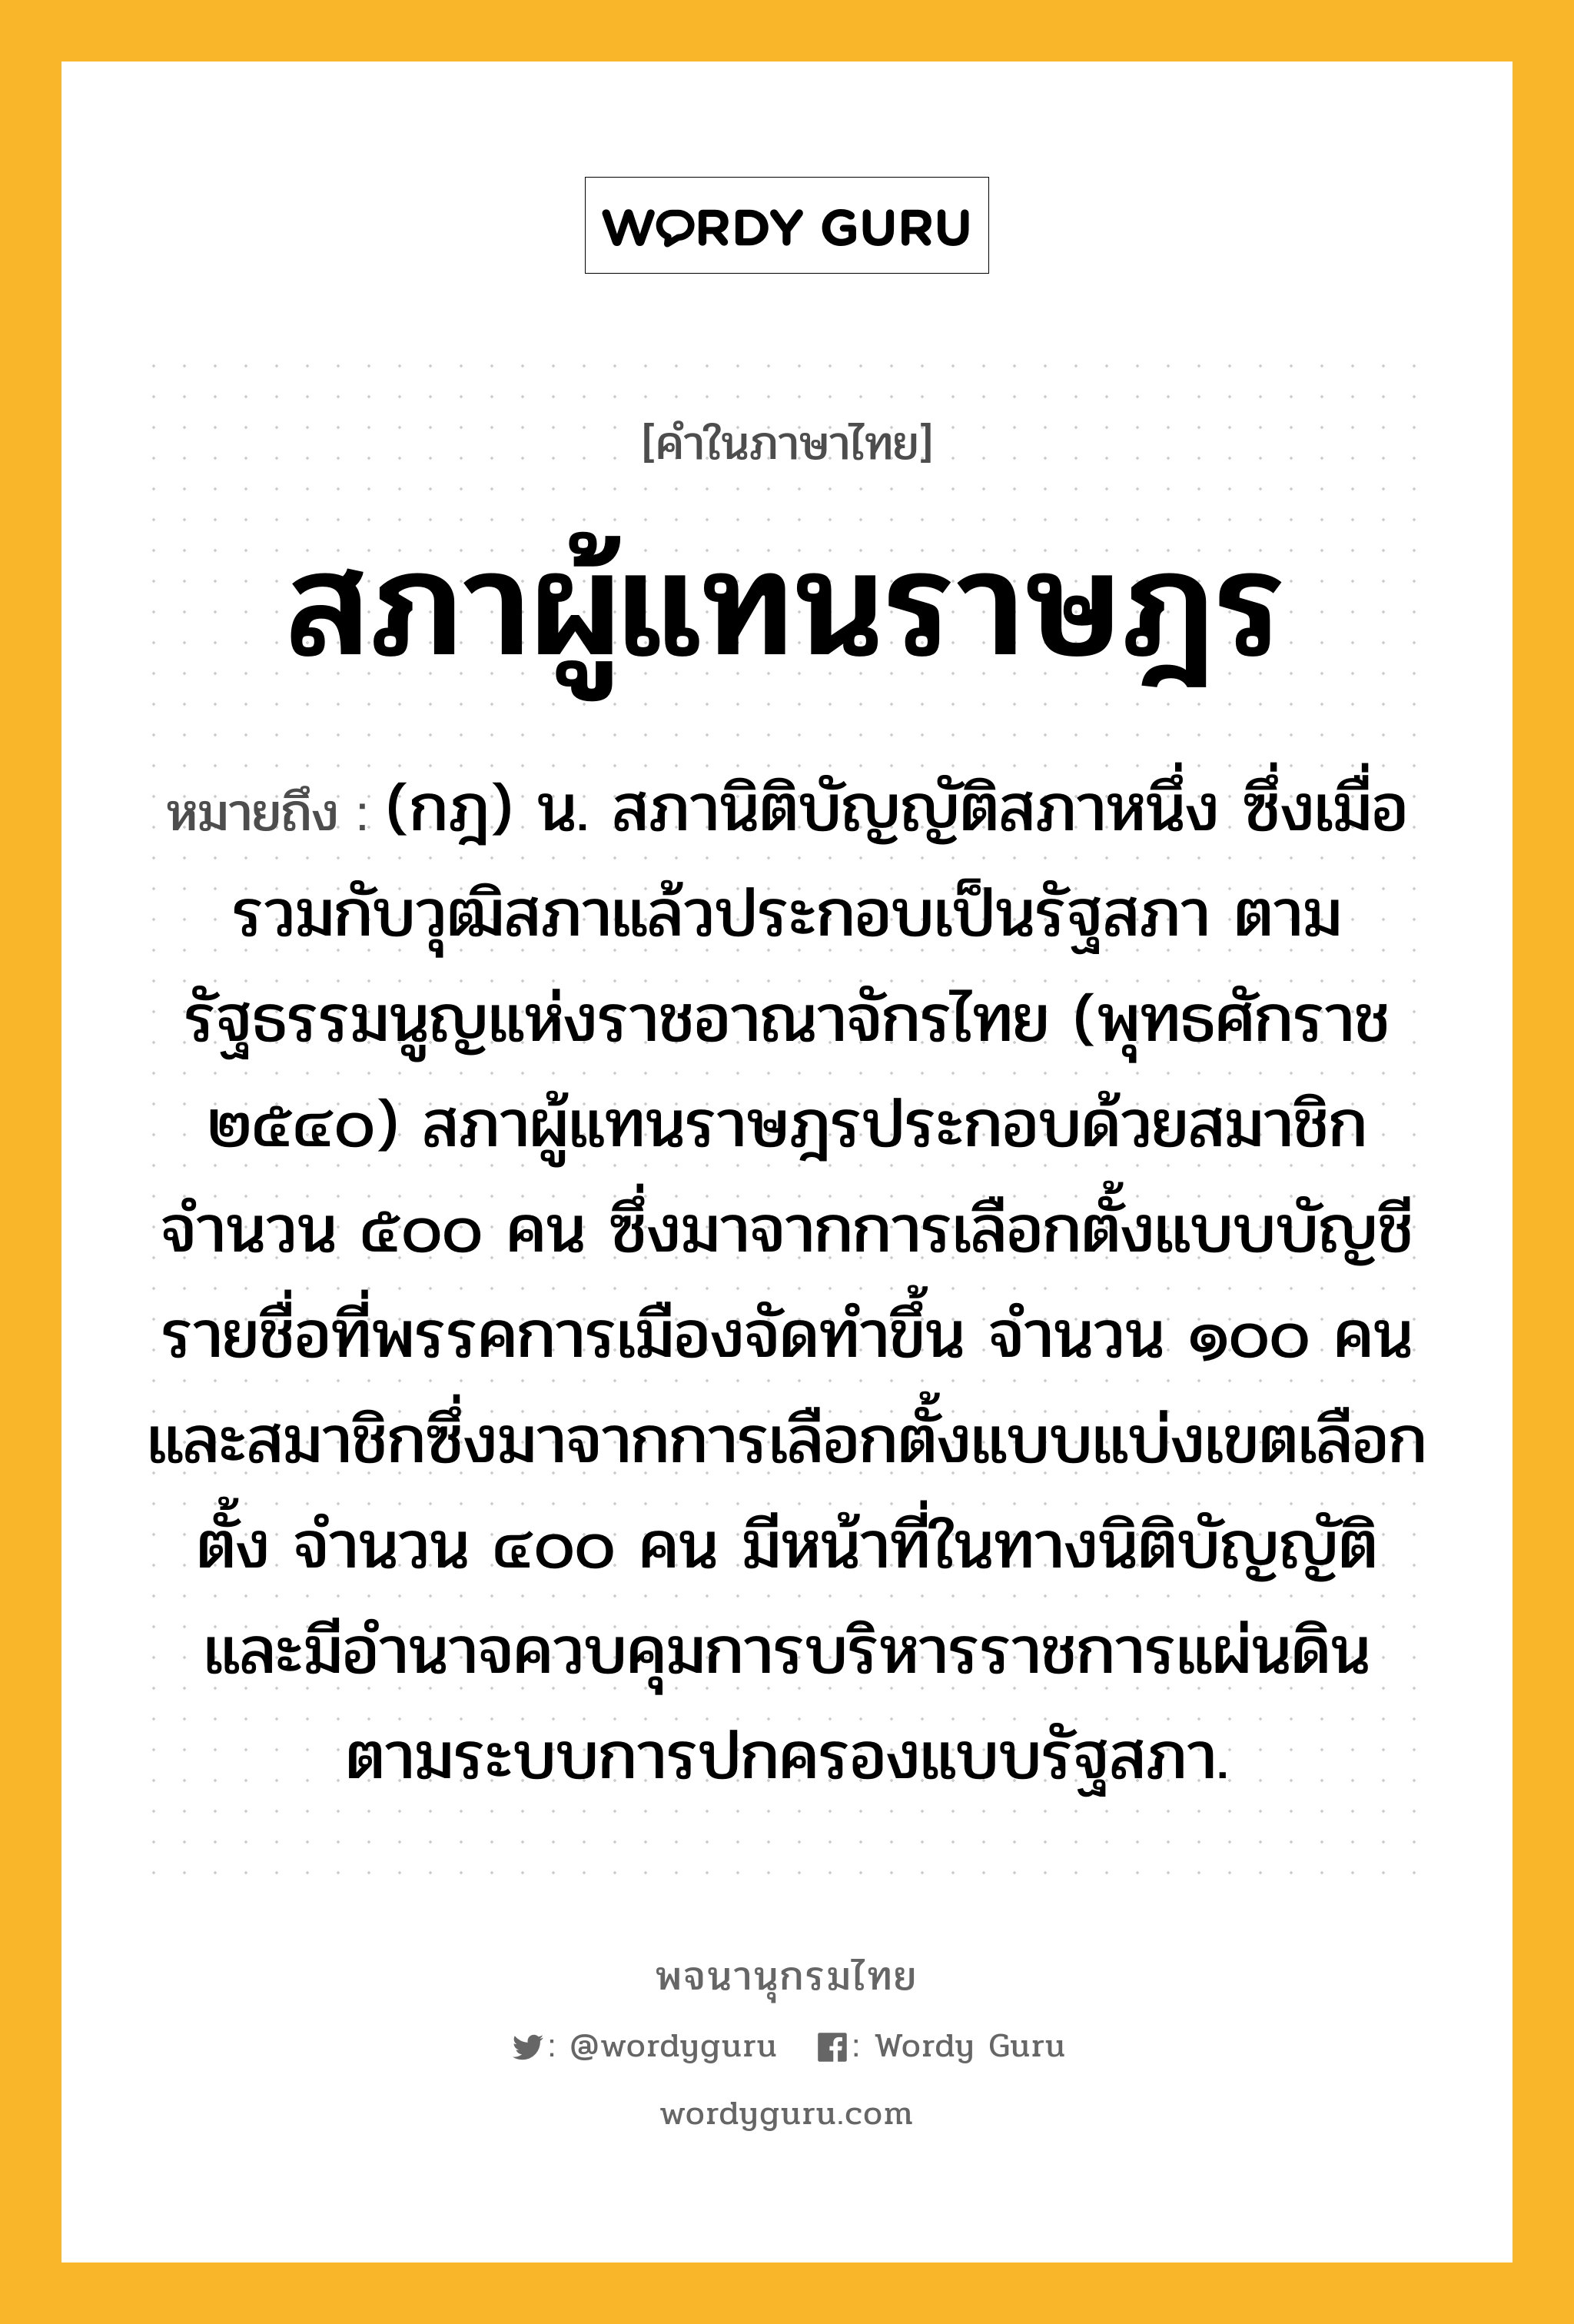 สภาผู้แทนราษฎร ความหมาย หมายถึงอะไร?, คำในภาษาไทย สภาผู้แทนราษฎร หมายถึง (กฎ) น. สภานิติบัญญัติสภาหนึ่ง ซึ่งเมื่อรวมกับวุฒิสภาแล้วประกอบเป็นรัฐสภา ตามรัฐธรรมนูญแห่งราชอาณาจักรไทย (พุทธศักราช ๒๕๔๐) สภาผู้แทนราษฎรประกอบด้วยสมาชิกจำนวน ๕๐๐ คน ซึ่งมาจากการเลือกตั้งแบบบัญชีรายชื่อที่พรรคการเมืองจัดทำขึ้น จำนวน ๑๐๐ คน และสมาชิกซึ่งมาจากการเลือกตั้งแบบแบ่งเขตเลือกตั้ง จำนวน ๔๐๐ คน มีหน้าที่ในทางนิติบัญญัติ และมีอำนาจควบคุมการบริหารราชการแผ่นดิน ตามระบบการปกครองแบบรัฐสภา.